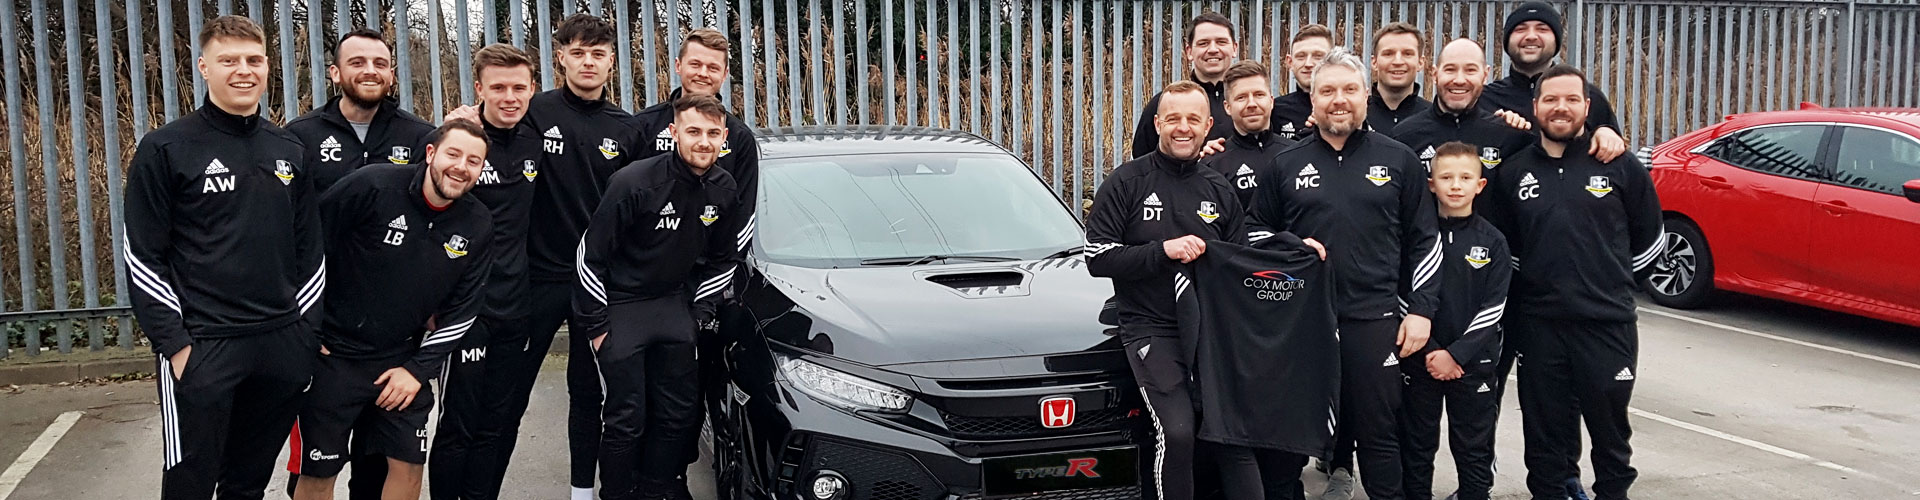 Cox Motor Group Sponsor Halton Rangers for New Season